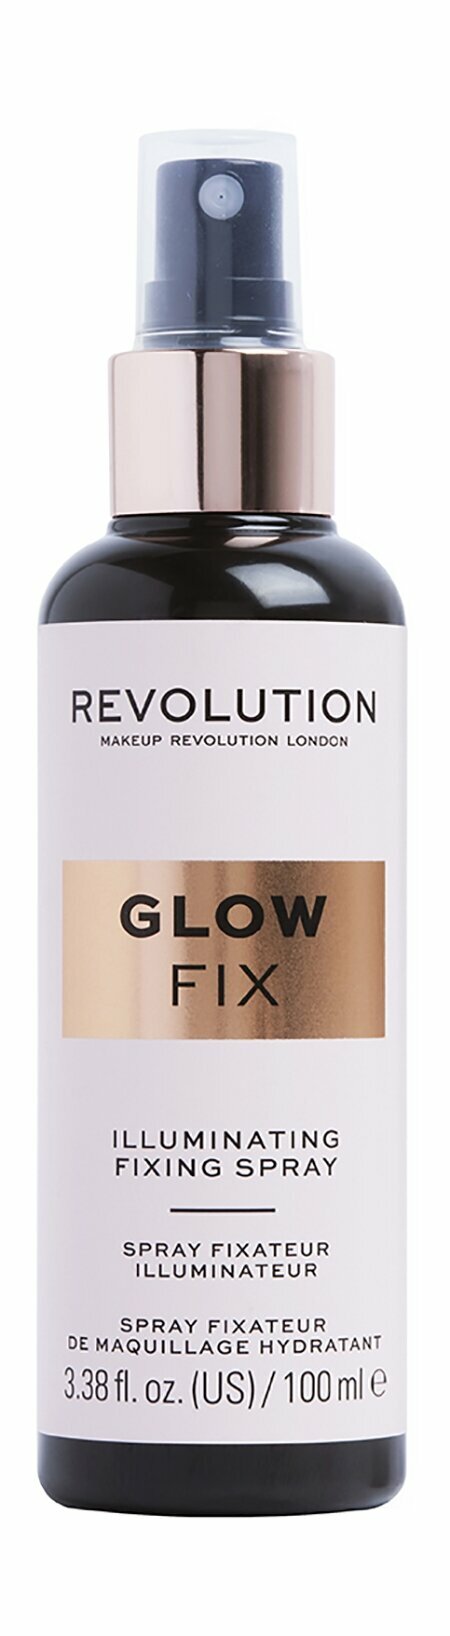 Спрей для фиксации макияжа со светоотражающими частицами Revolution Makeup Glow Fix Illuminating Fixing Spray 230 мл .